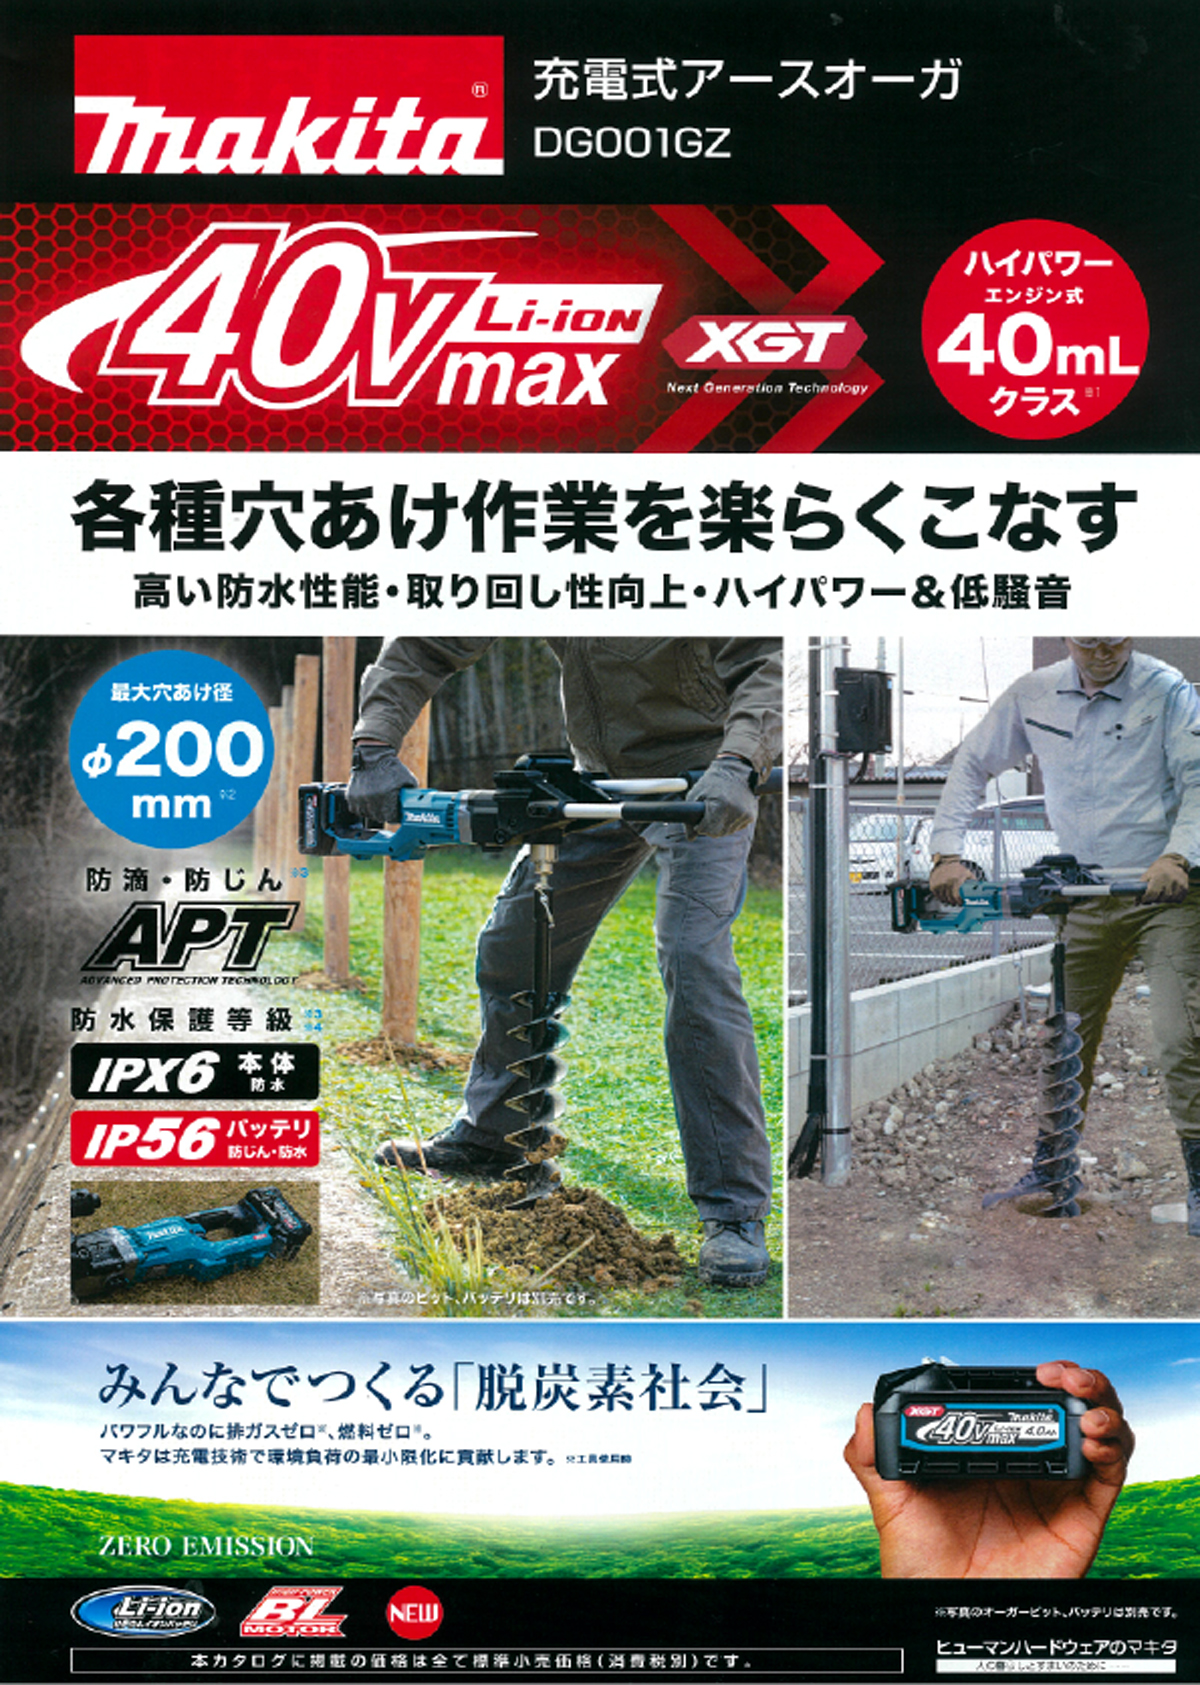 マキタ DG001GZ 40Vmax充電式アースオーガ(本体のみ) ウエダ金物【公式サイト】